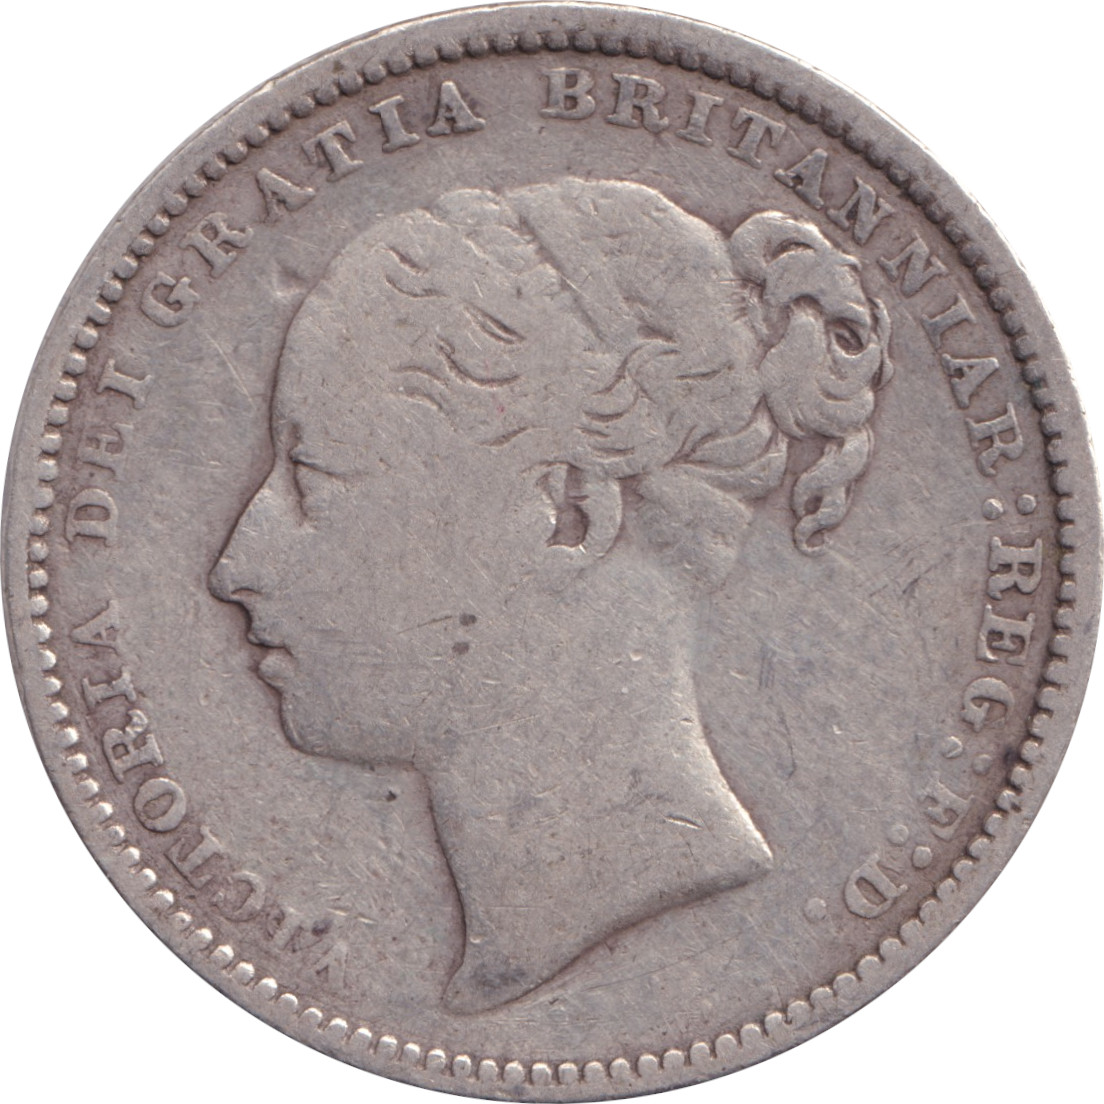 1 shilling - Victoria - Tête jeune